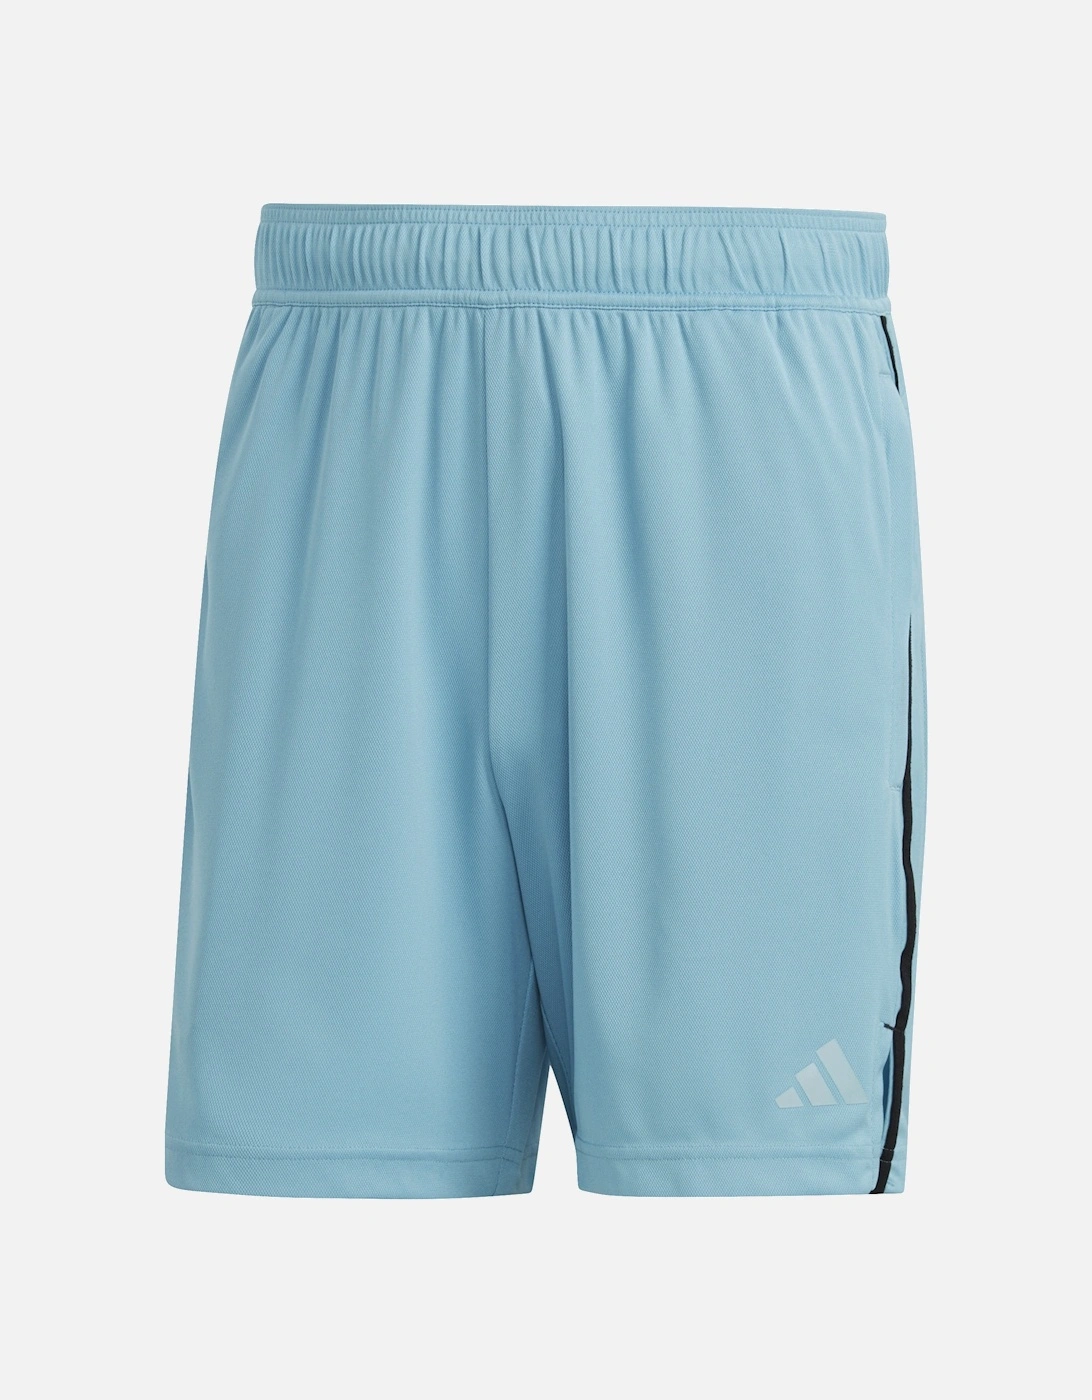 Mens Base Shorts (Blue), 6 of 5